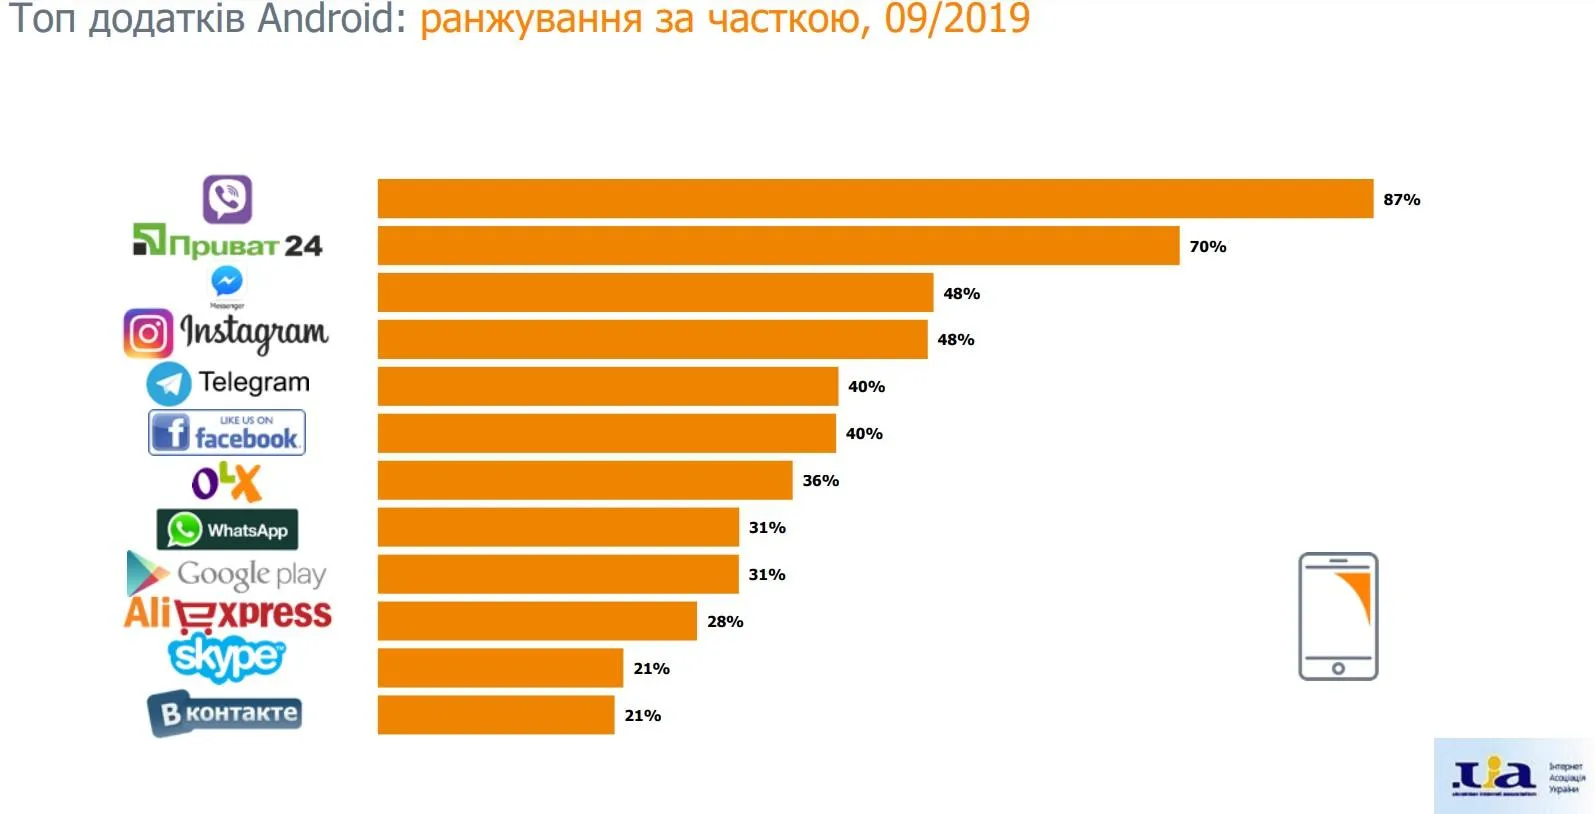 Найпопулярніші додатки серед українців